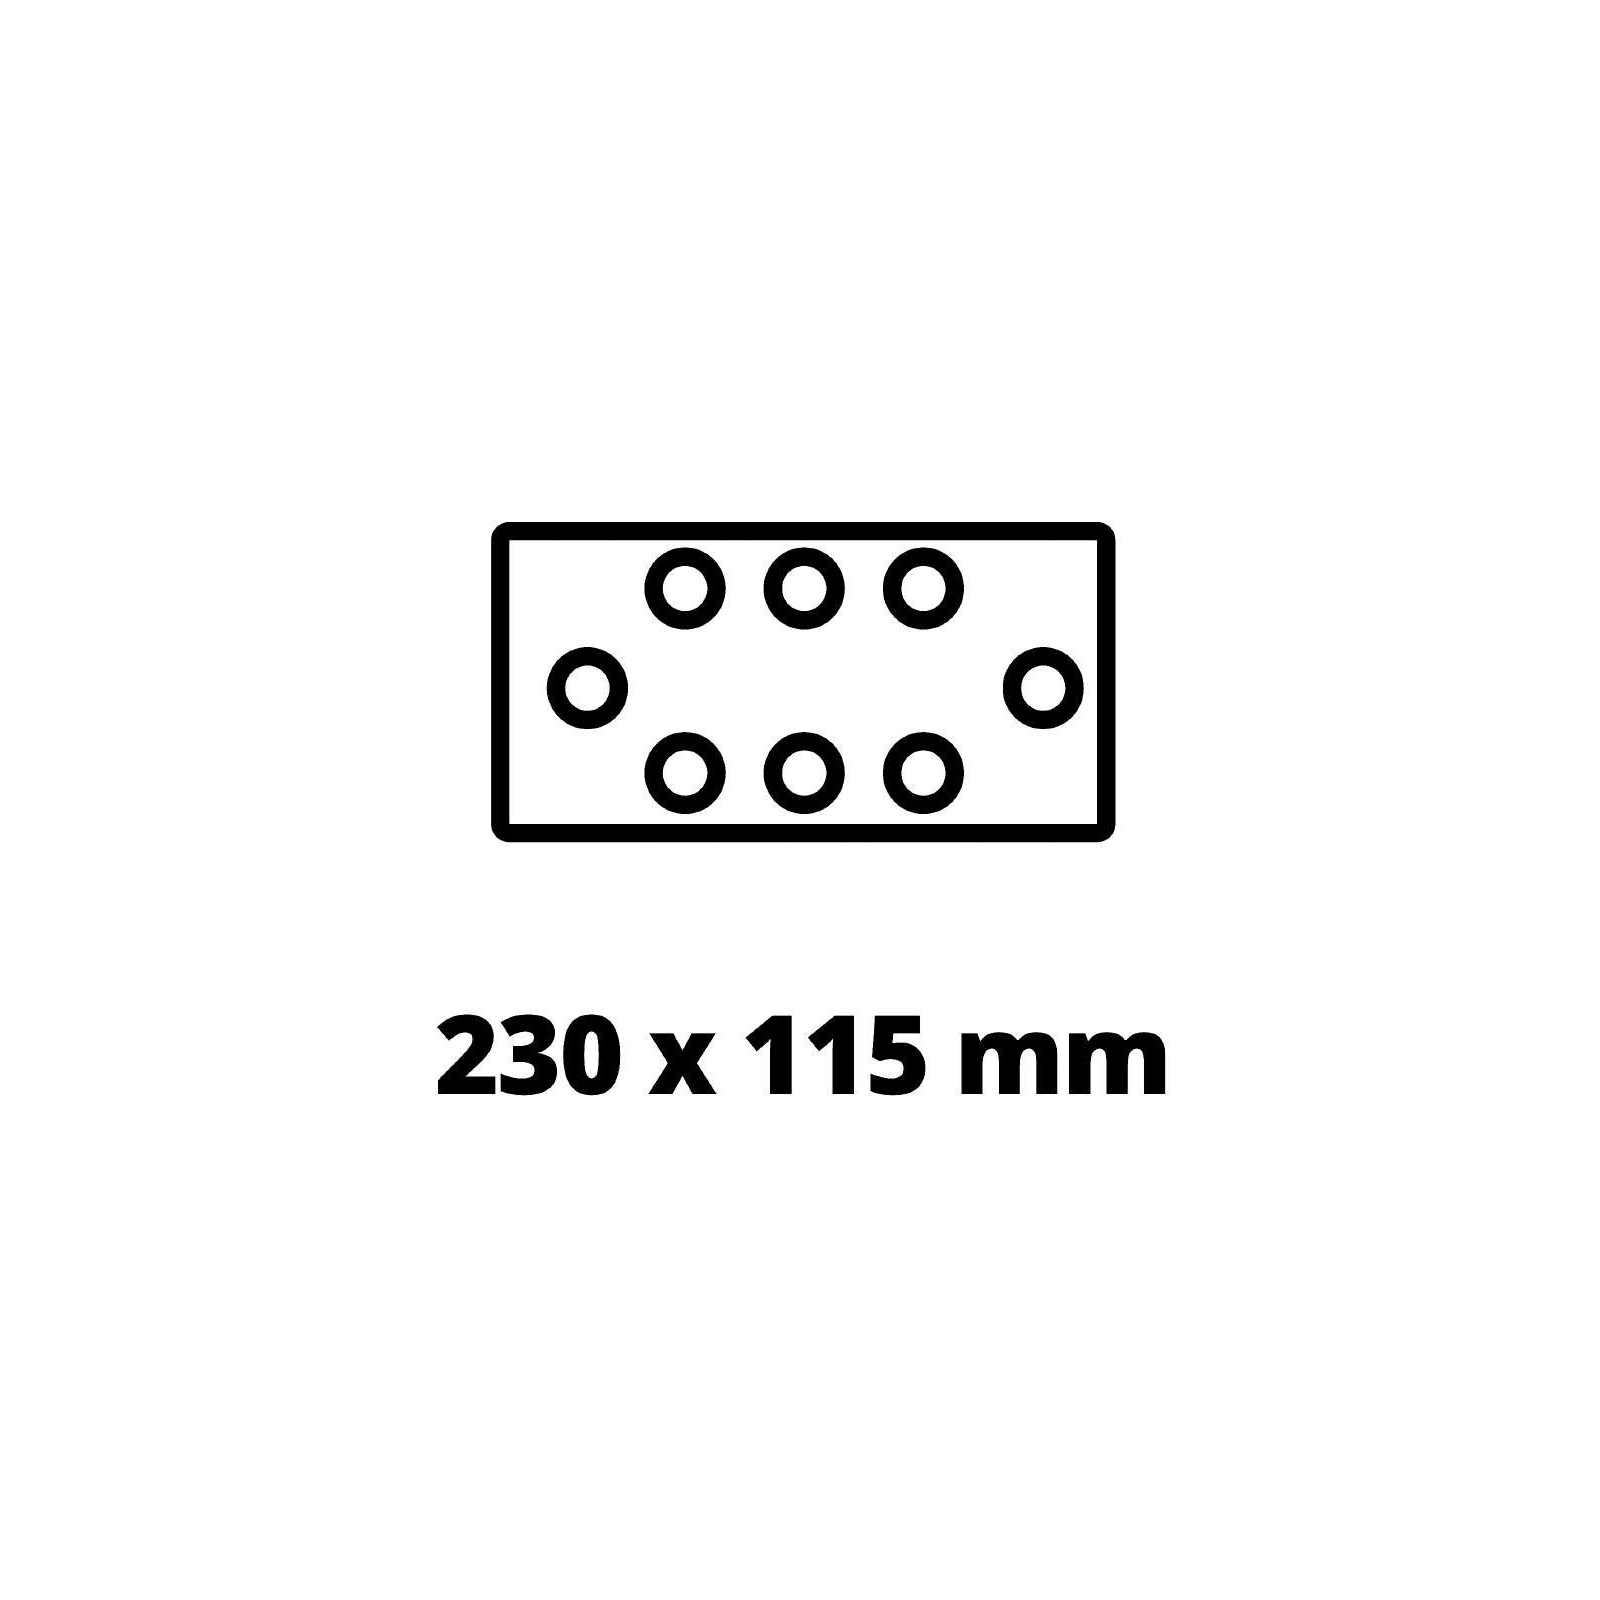 Шлифовальная машина Einhell TE-OS 18/230 Li - Solo, PXC, 18В, 230х115 мм (без АКБ и ЗУ) (4460720) изображение 7